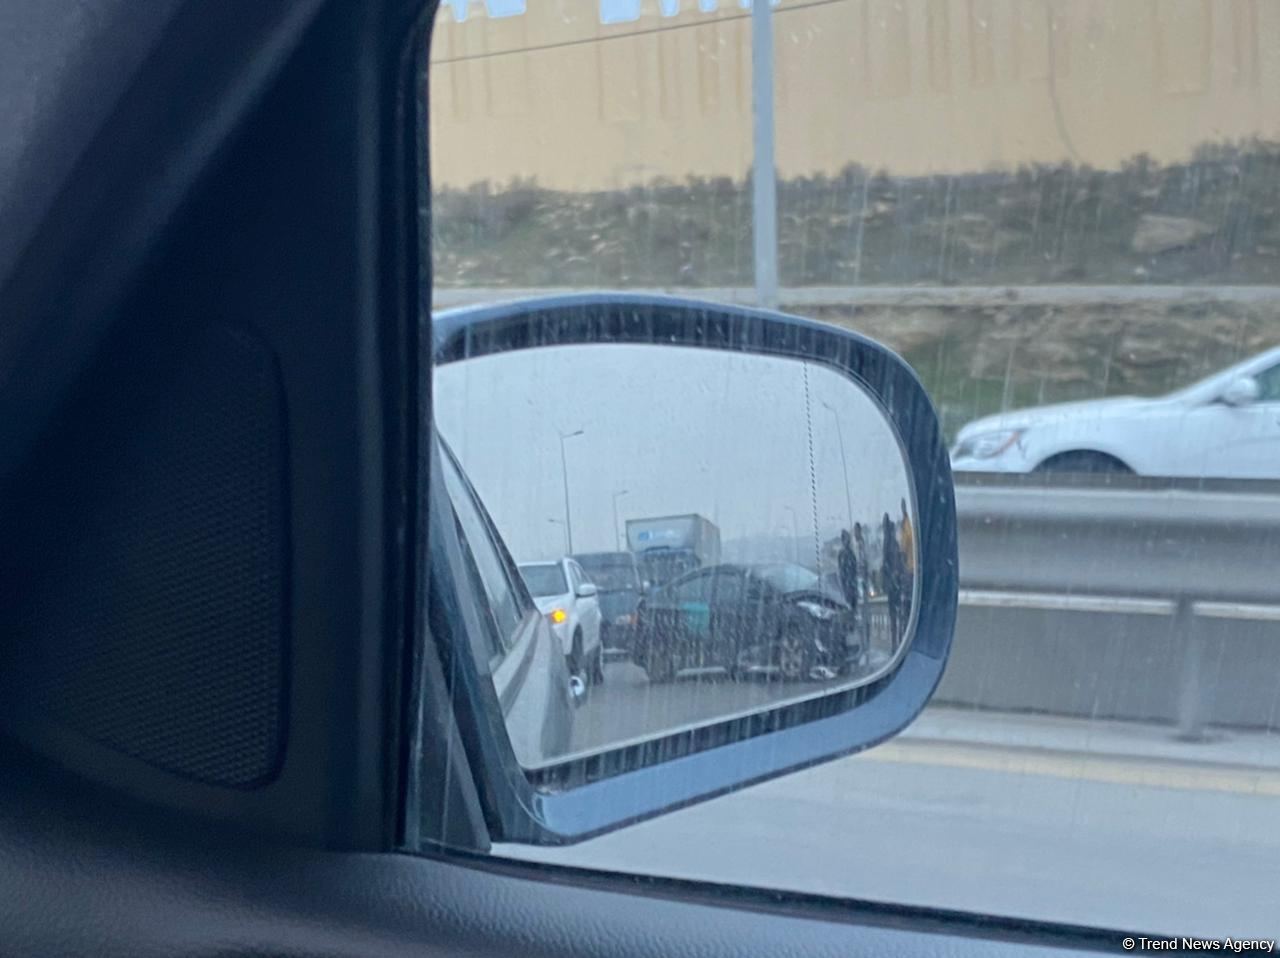 Bakıda yük maşını ilə minik avtomobili toqquşub, yolda tıxac yaranıb (FOTO) - Gallery Image